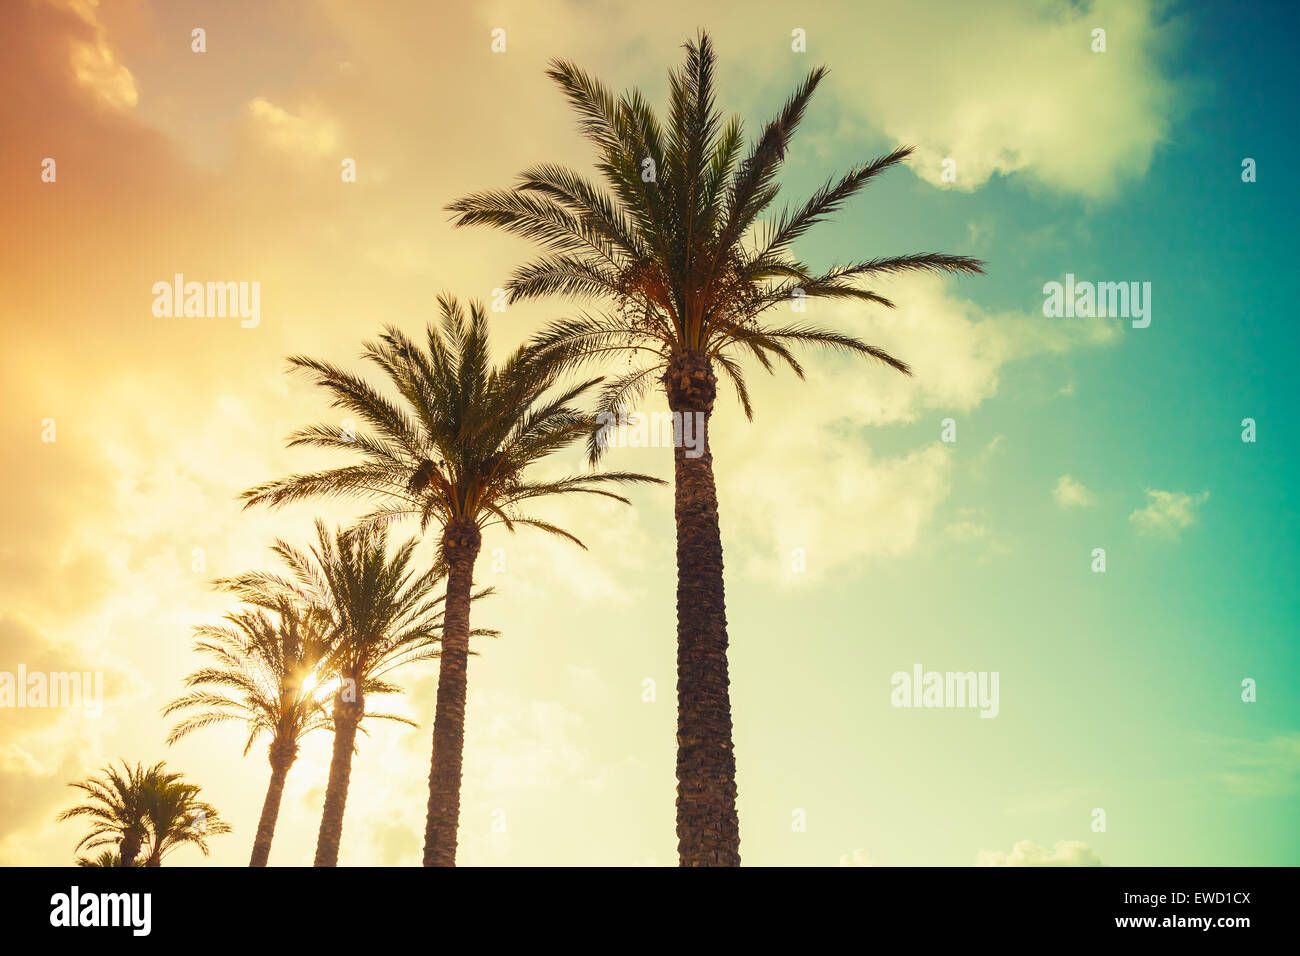 Palmiers et soleil brillant sur fond de ciel nuageux. Vintage style. Photo  avec des tons colorés effet filtre instagram gradient Photo Stock - Alamy